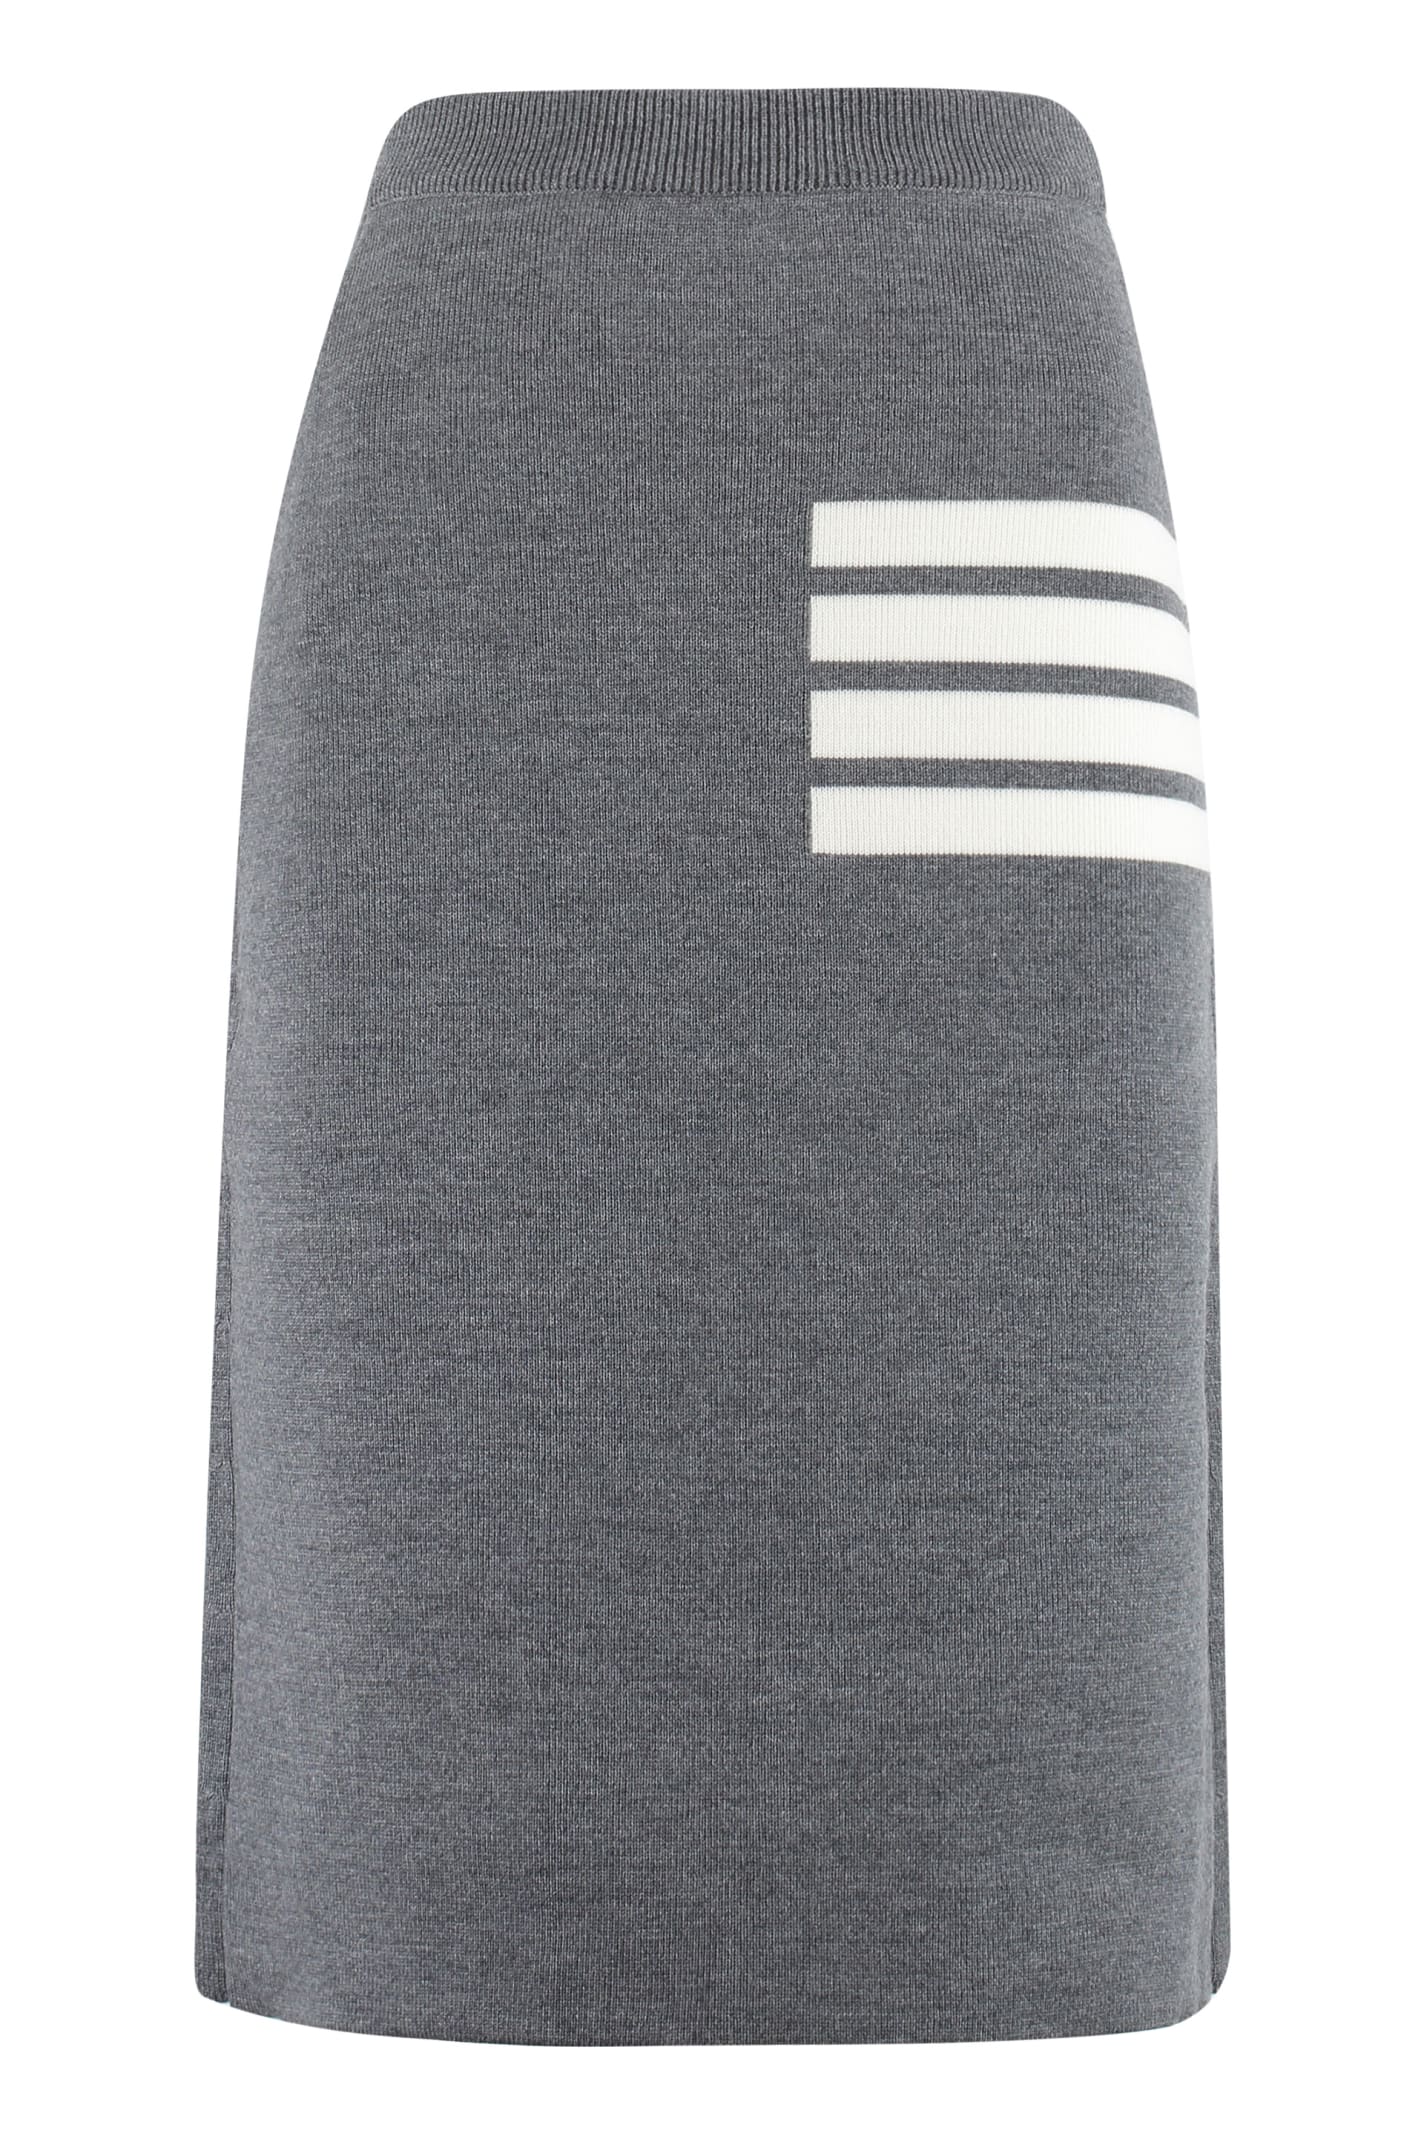 Thom Browne Knit Pencil Skirt